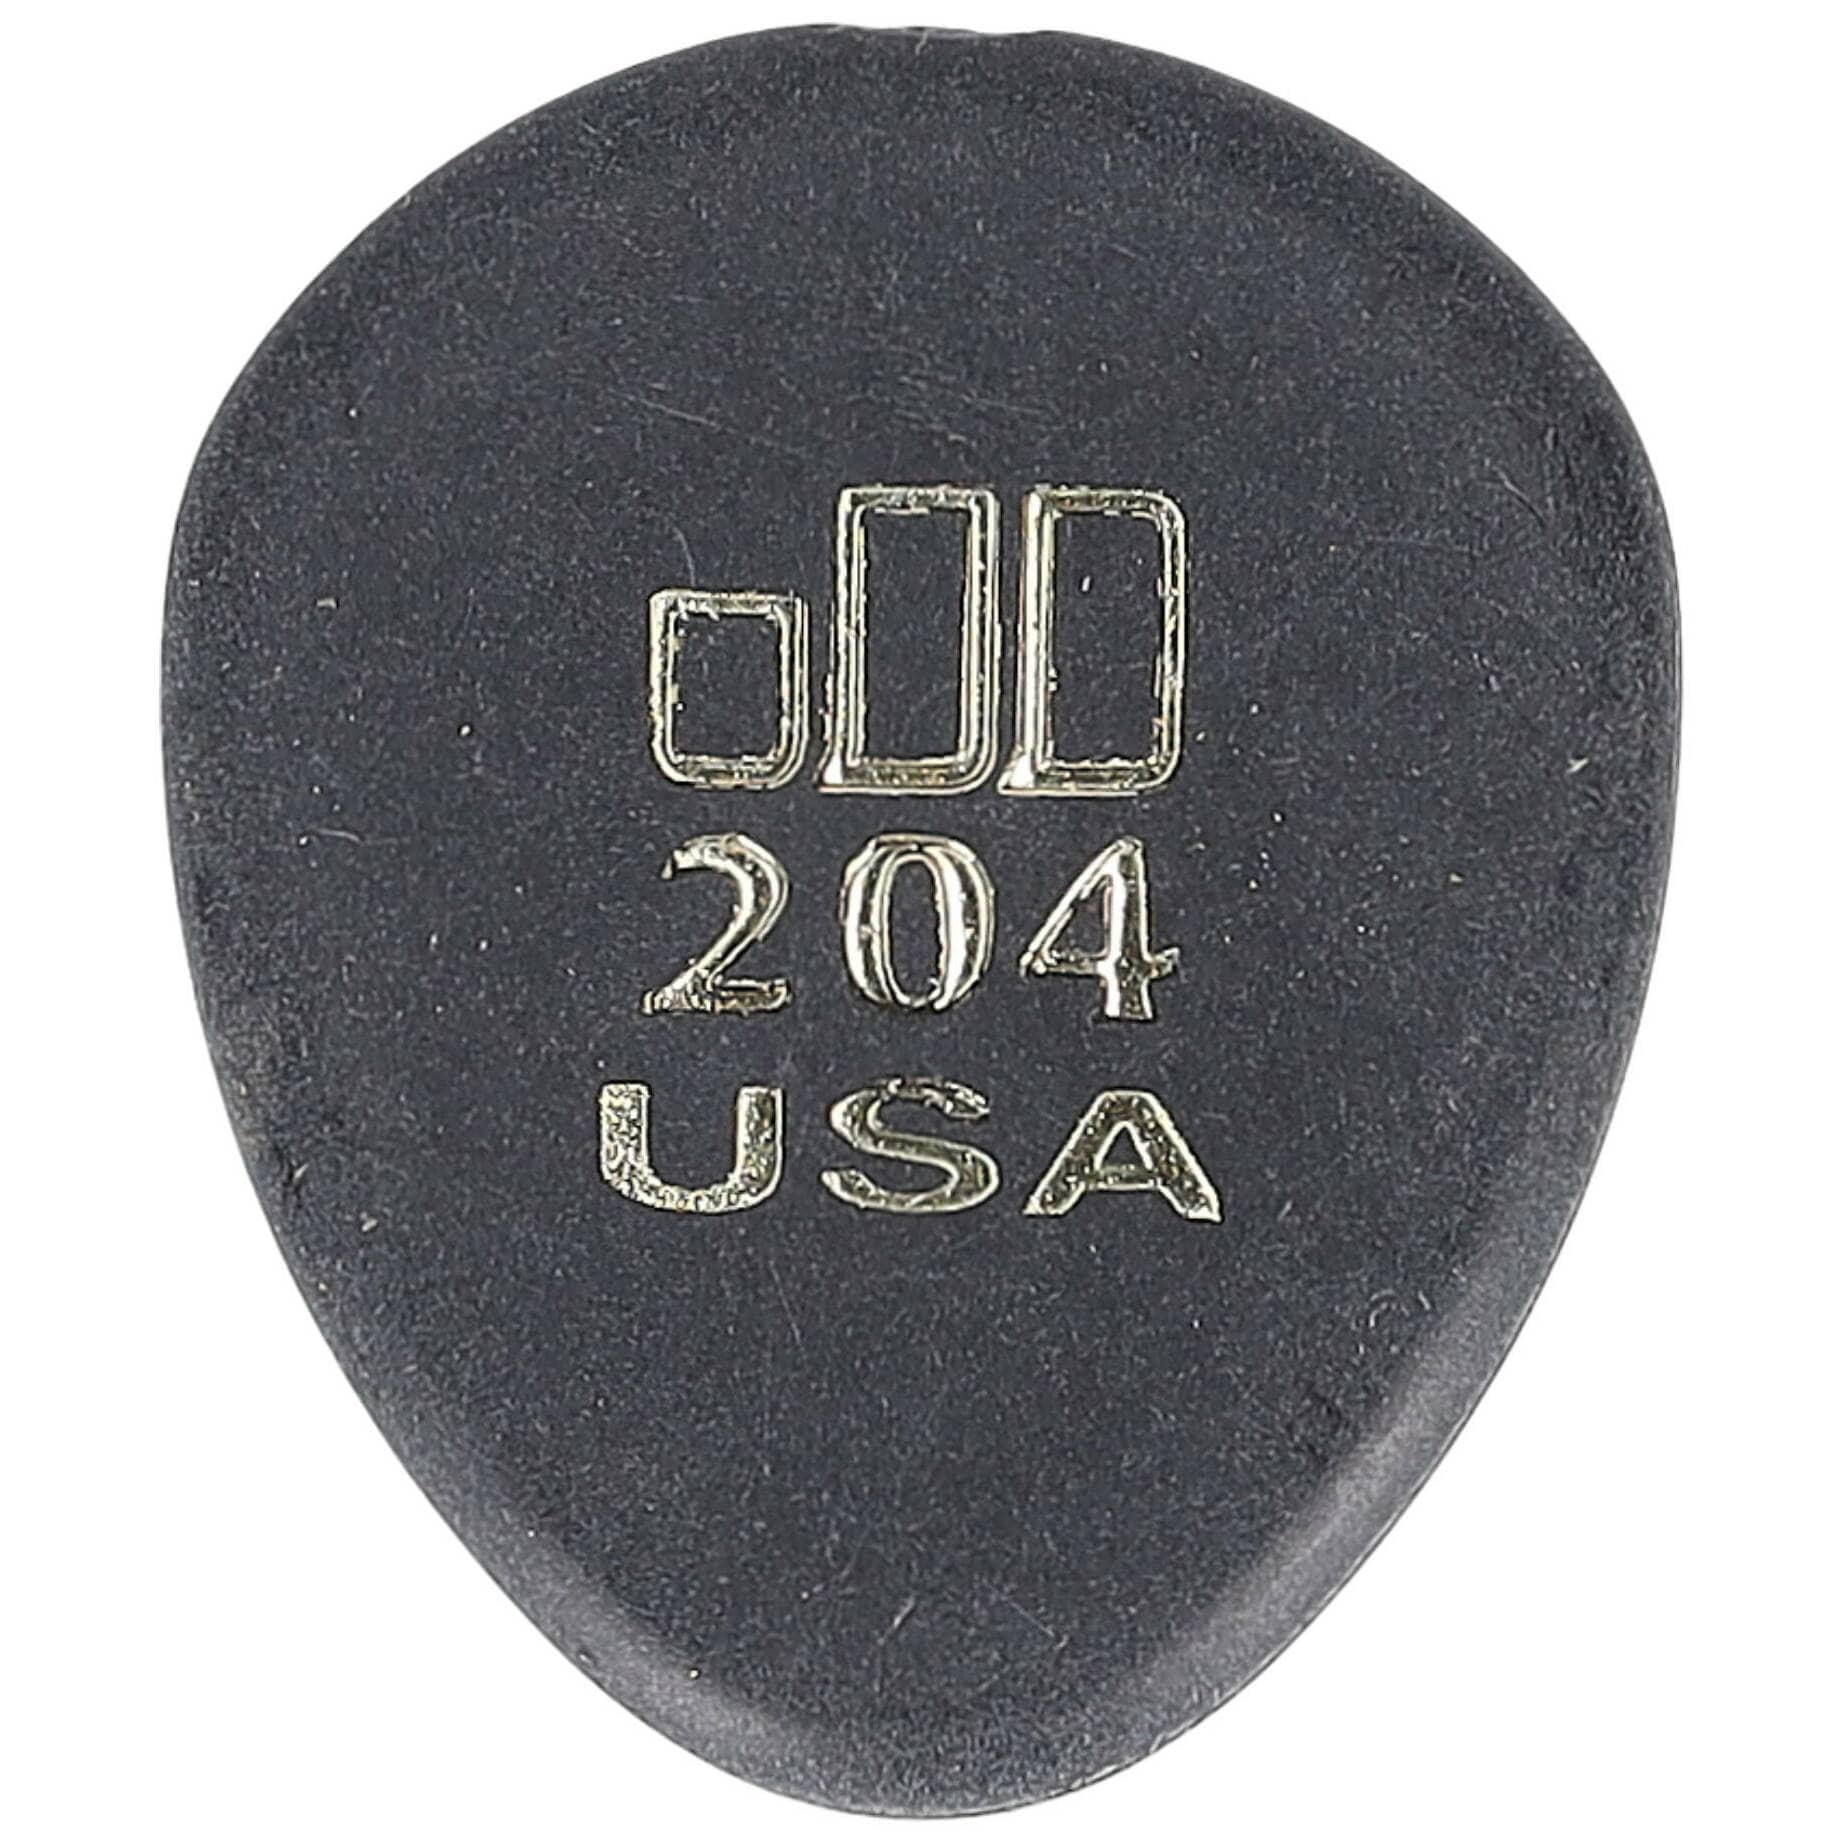 Dunlop Pick Jazztone Small 204